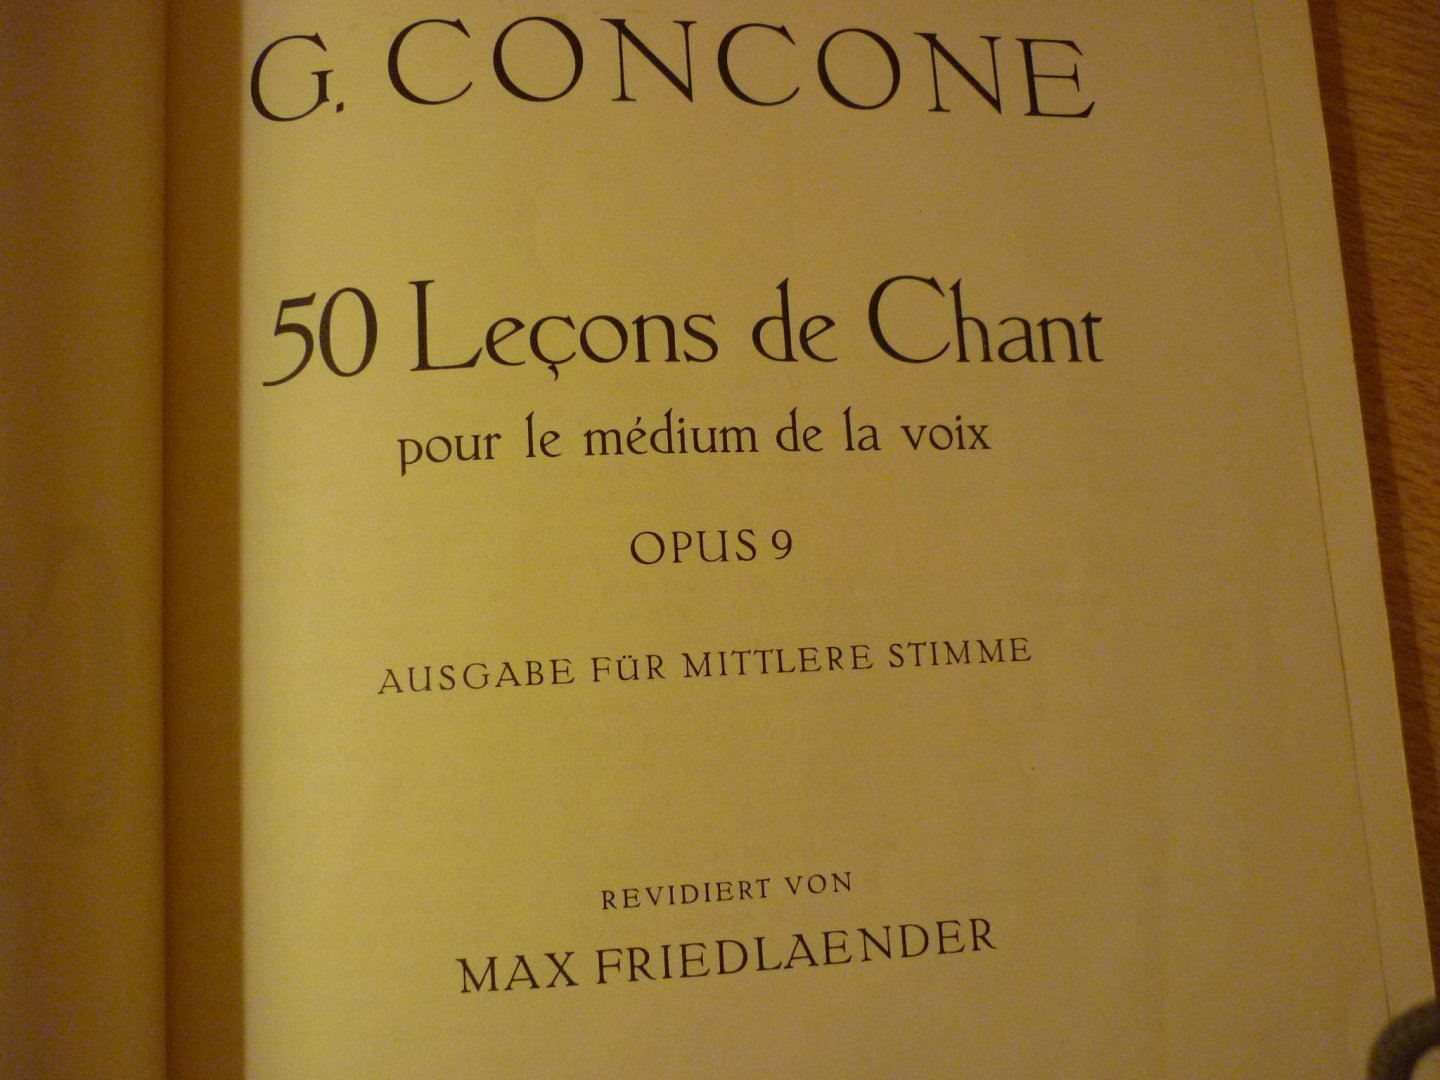 Concone; Giuseppe - 50 Lecons de Chant; pour le m'dium de la voix; Opus 9 (Ausgabe fur mittlere stimme) (Max Friedlaender)